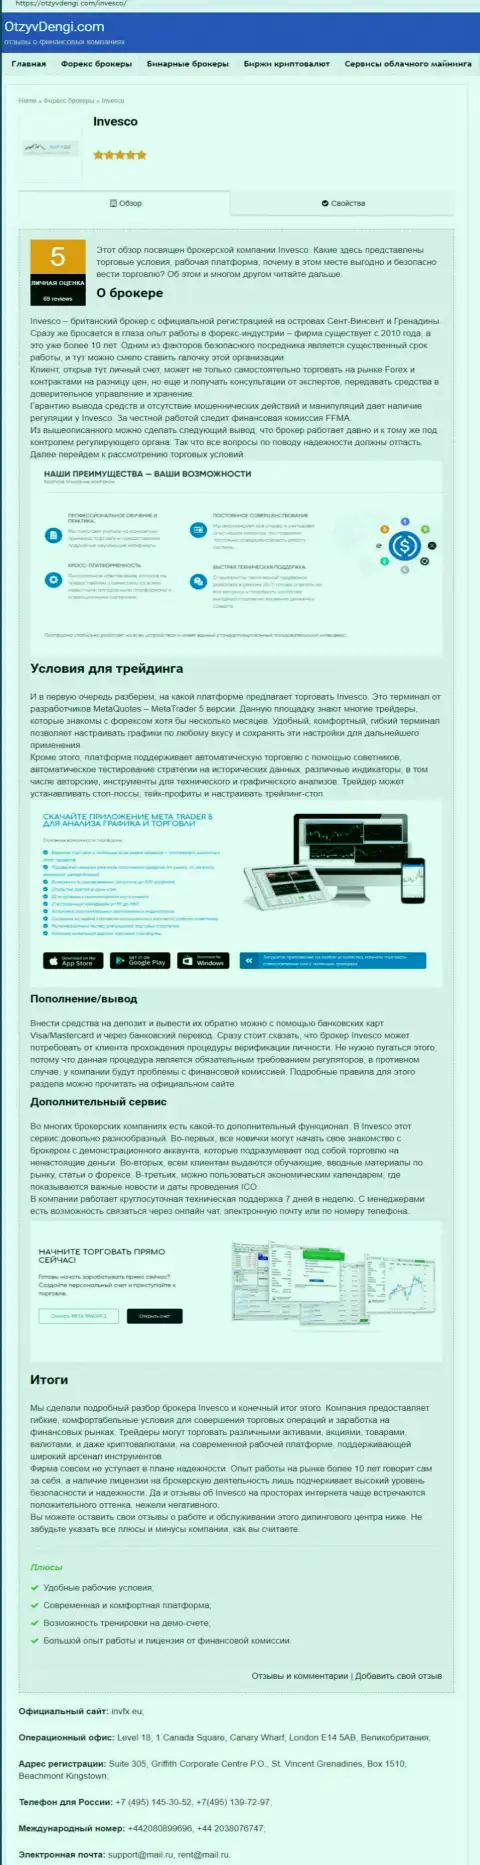 Сайт otzyvdengi com опубликовал обзор о форекс компании ИНВФИкс Еу